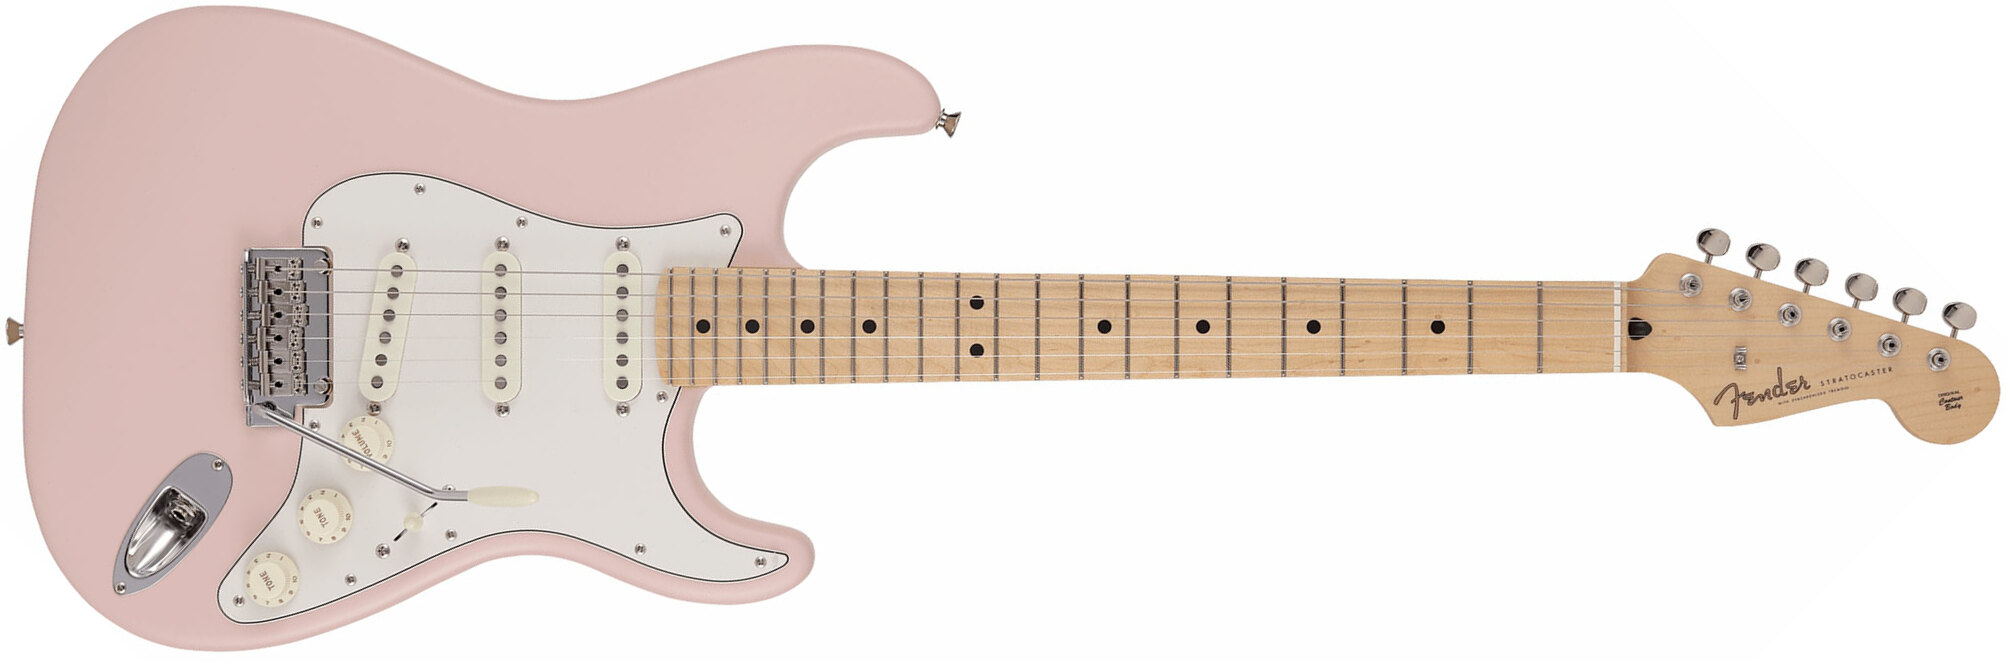 Fender Strat Junior Mij Jap 3s Trem Rw - Satin Shell Pink - Guitare Électrique Enfant - Main picture